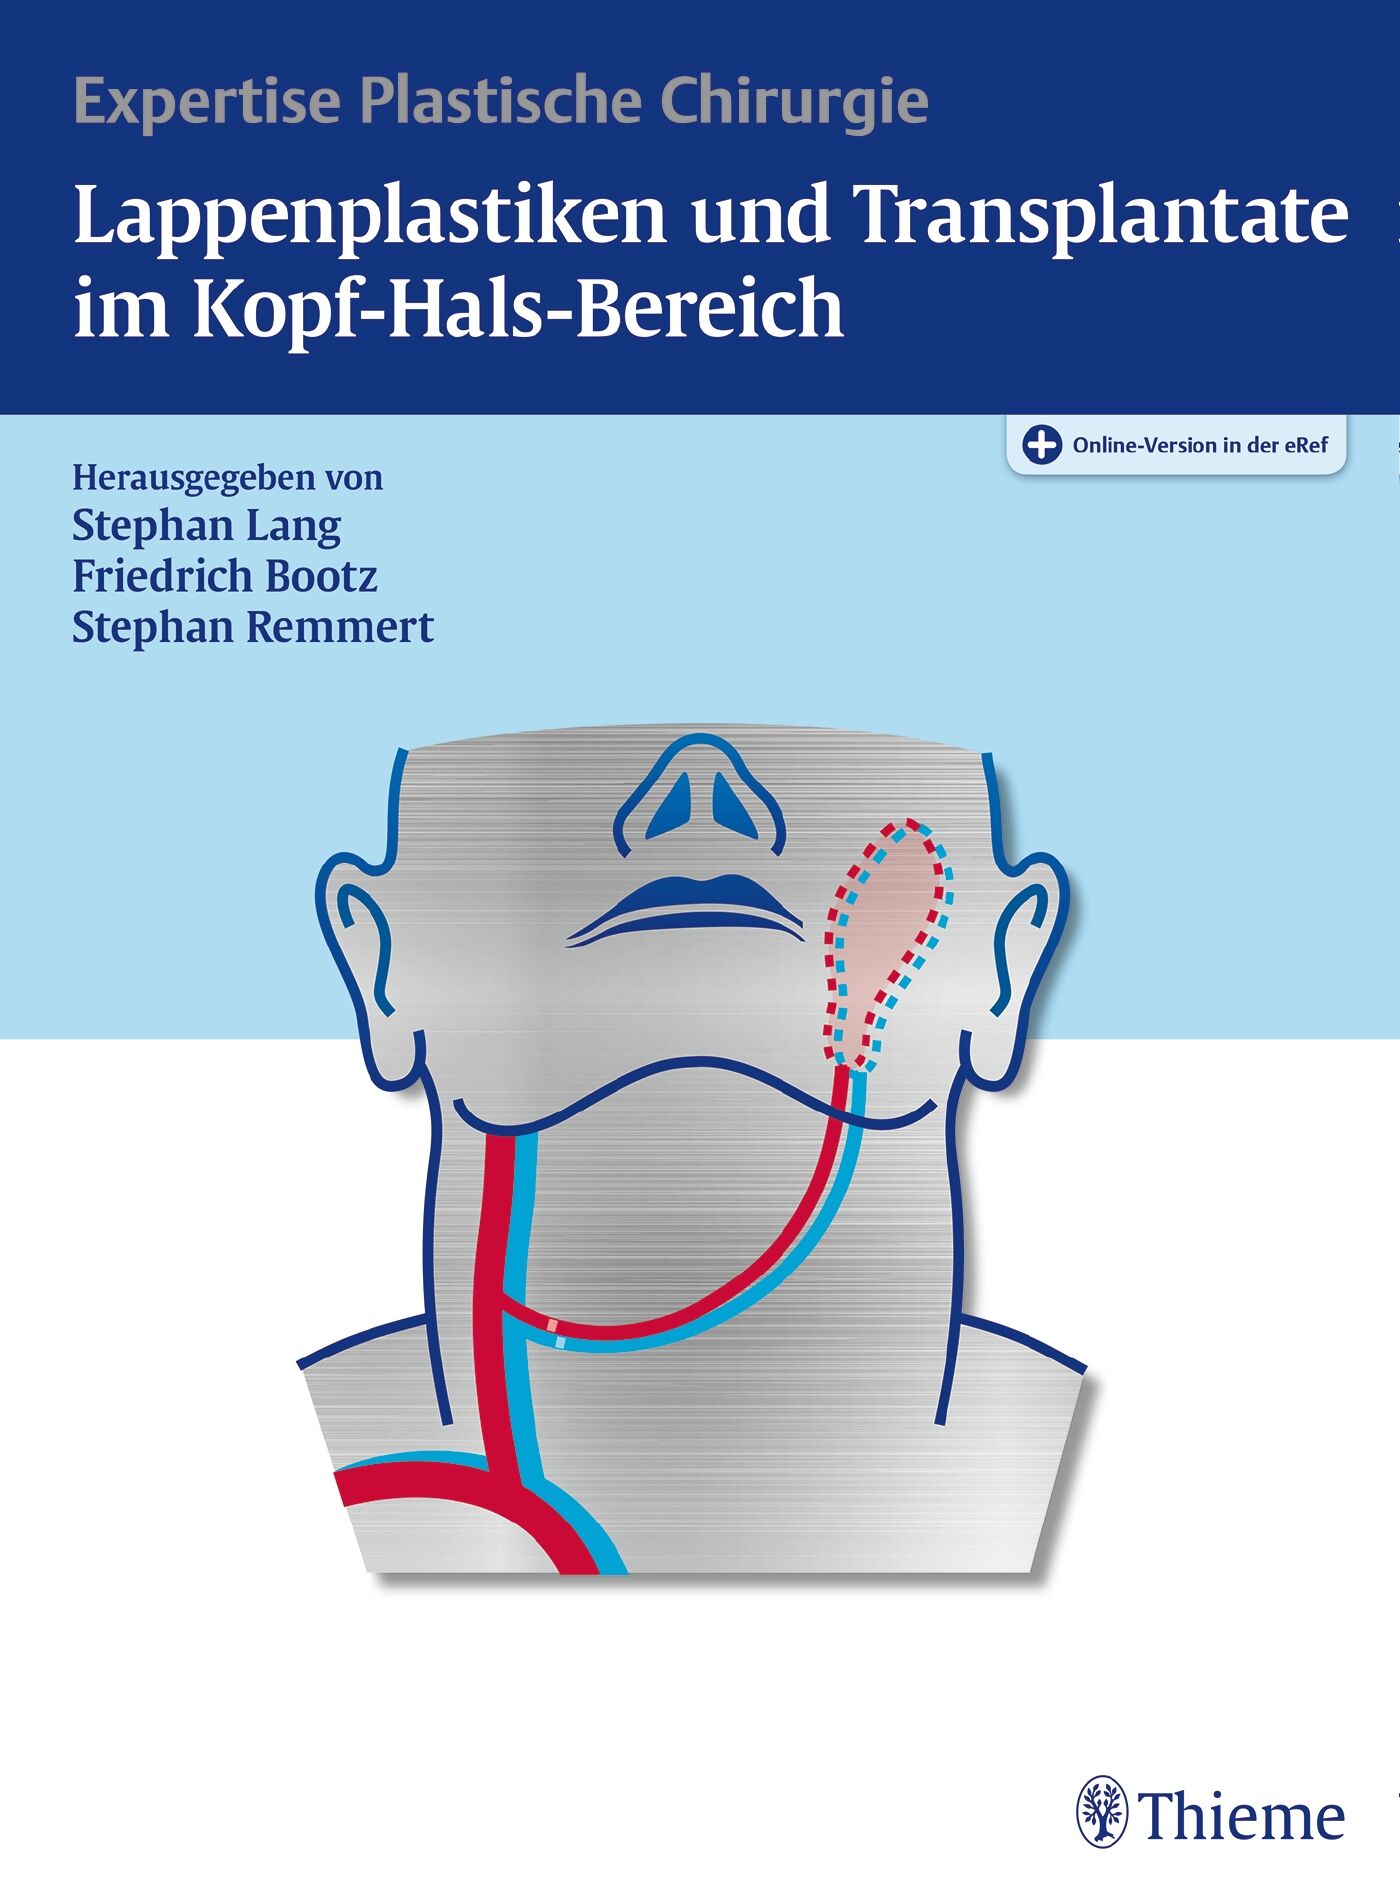 Lappenplastiken und Transplantate im Kopf-Hals-Bereich, 9783131981714